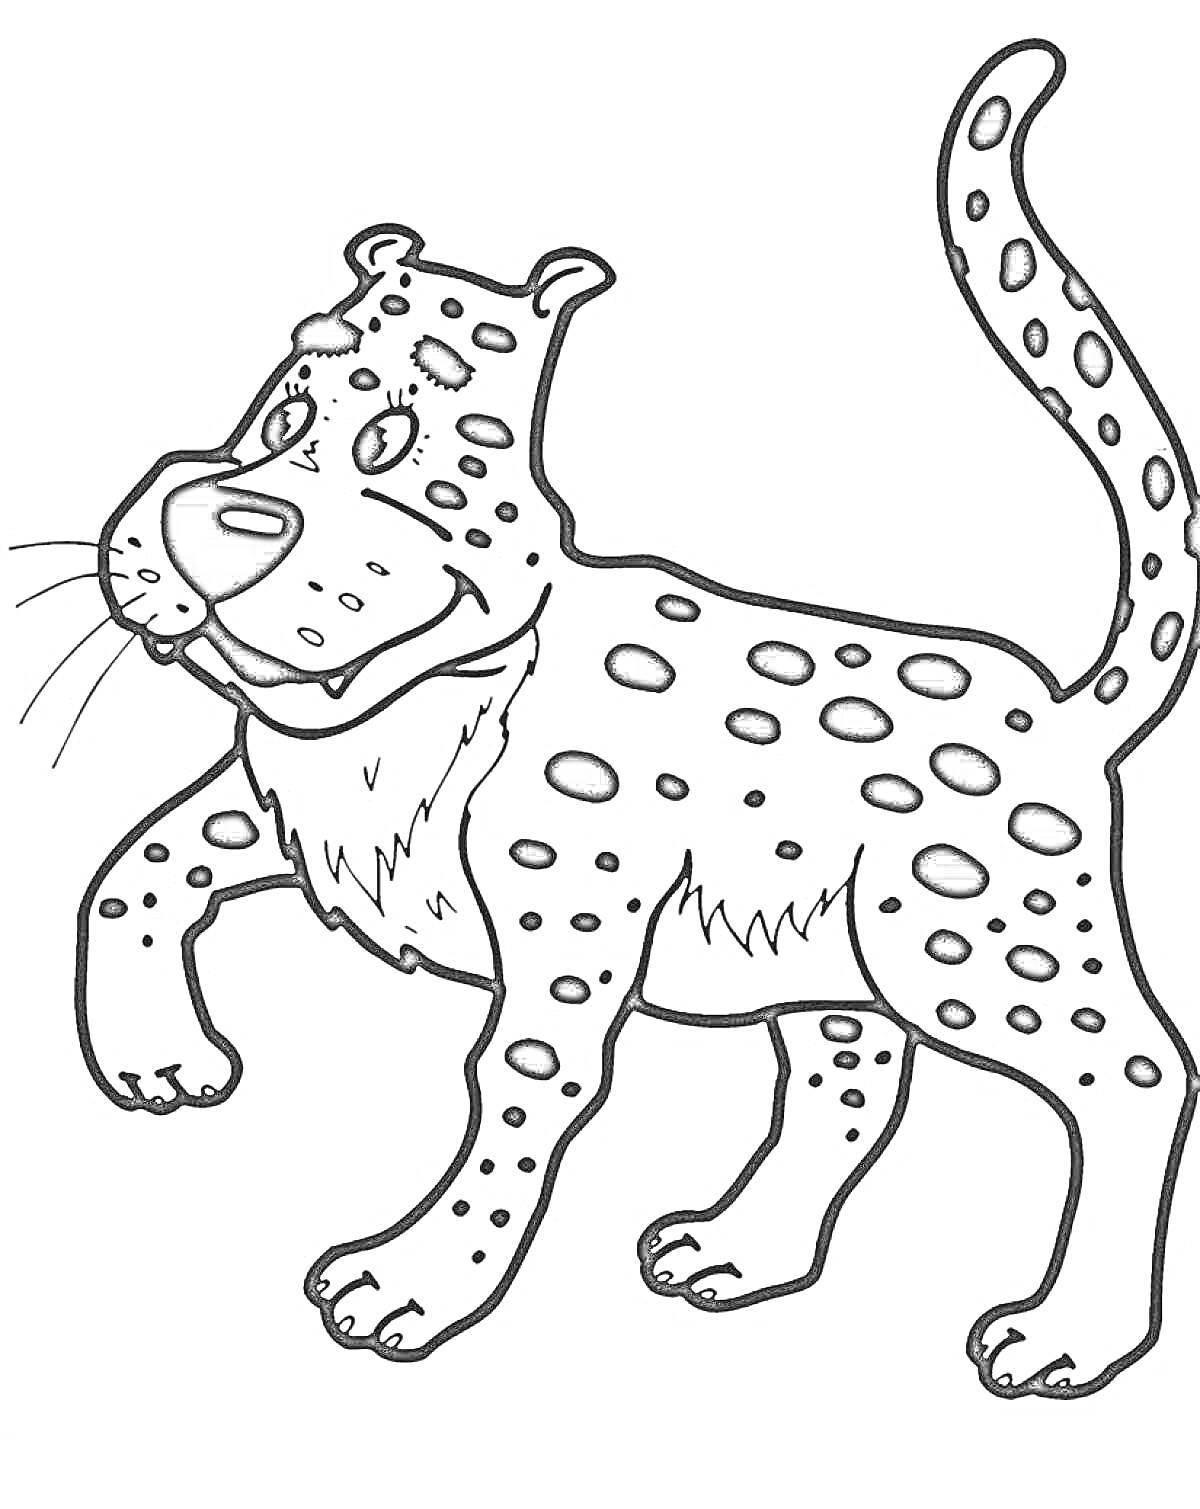 Леопард с улыбкой и пятнами на теле